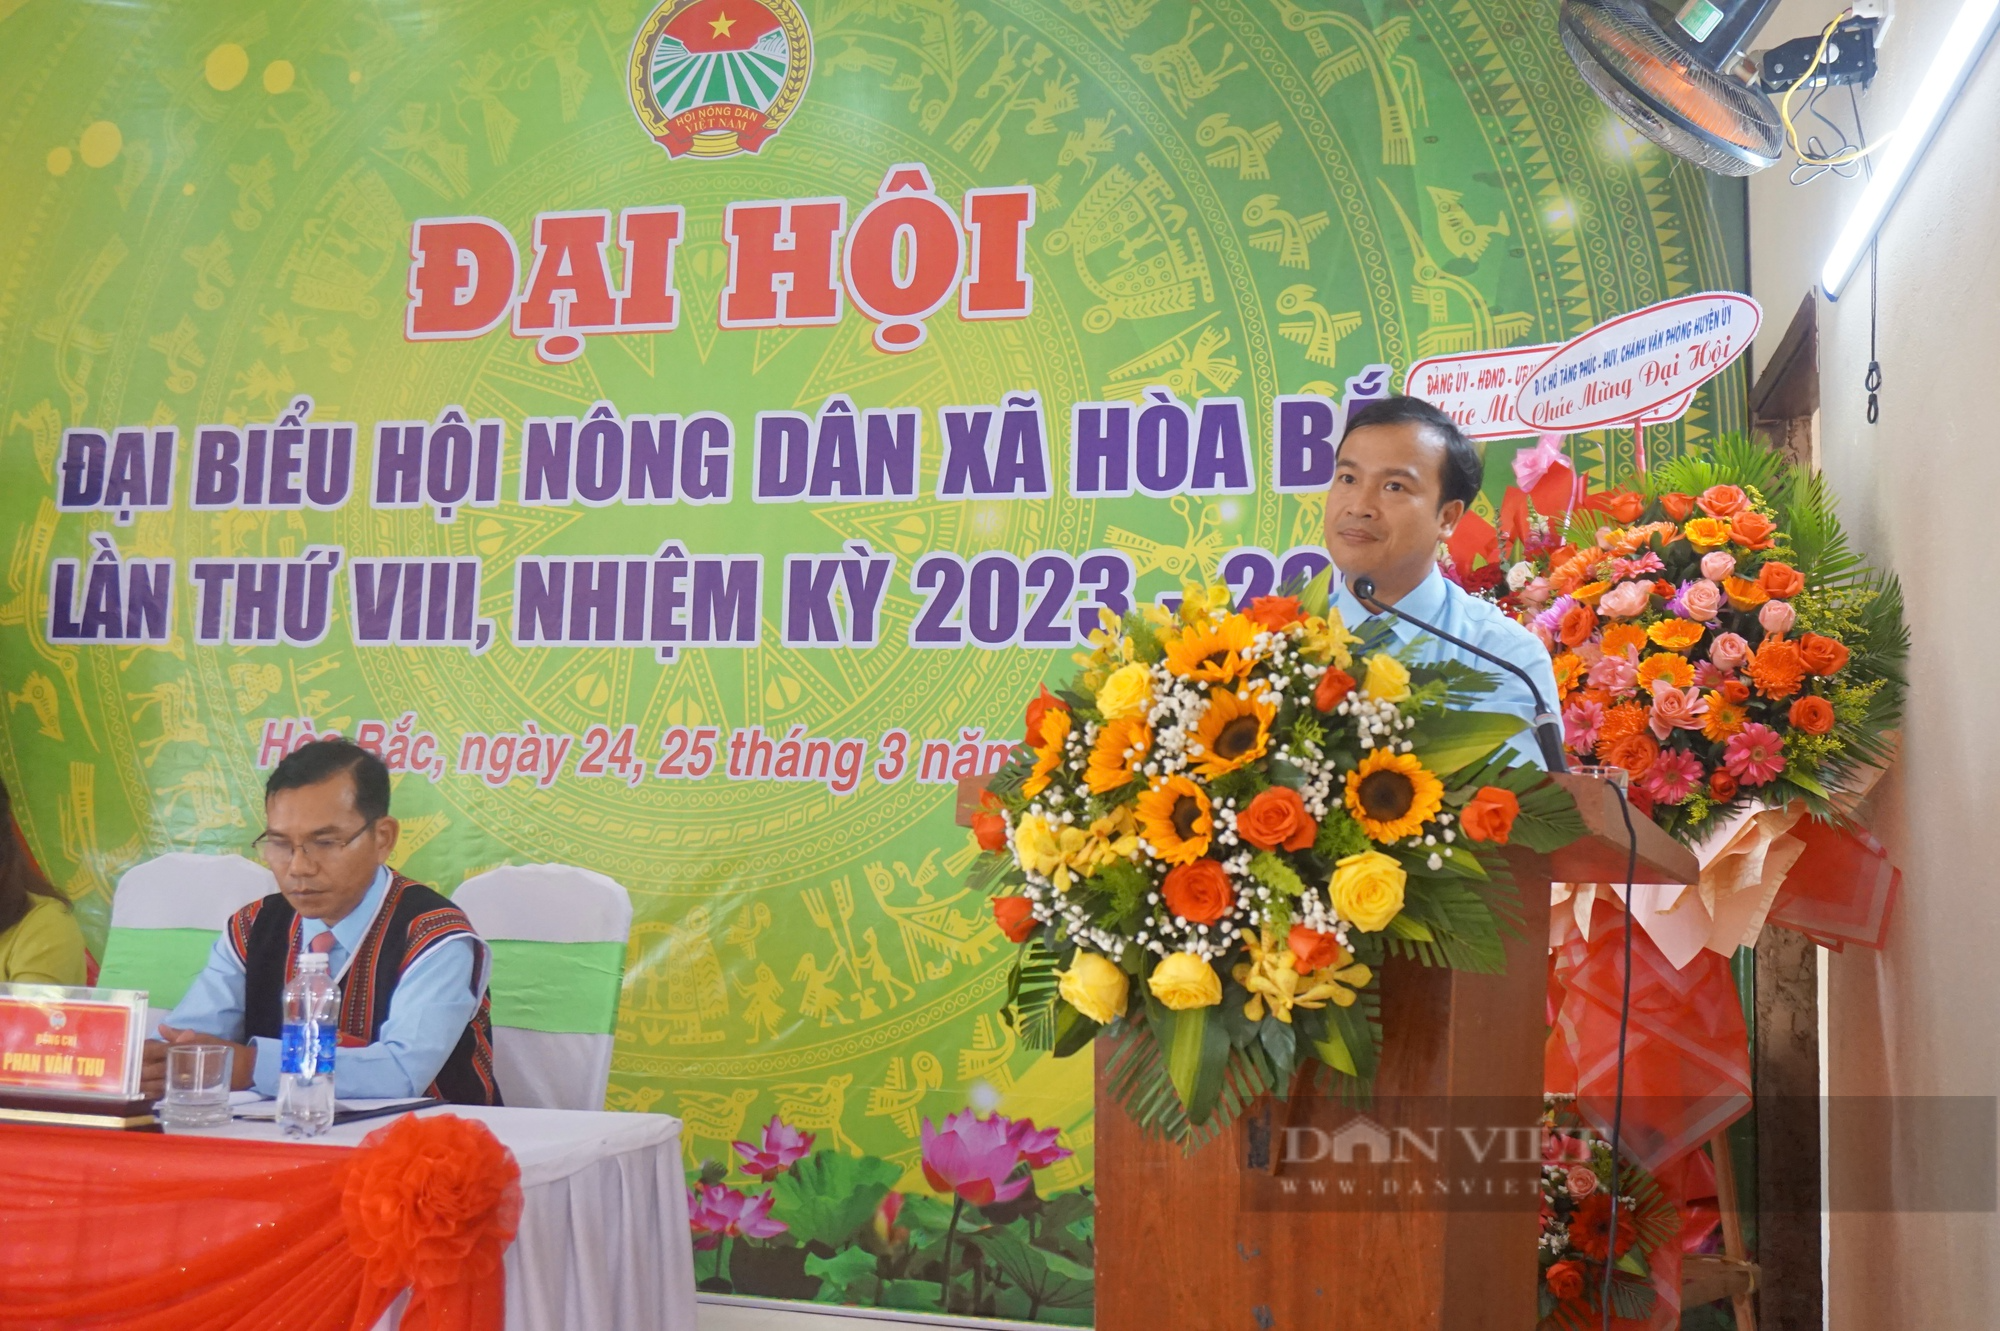 Đà Nẵng: Hội Nông dân xã Hoà Bắc tổ chức Đại hội Đại biểu lần thứ VIII, nhiệm kỳ 2023-2028 - Ảnh 3.